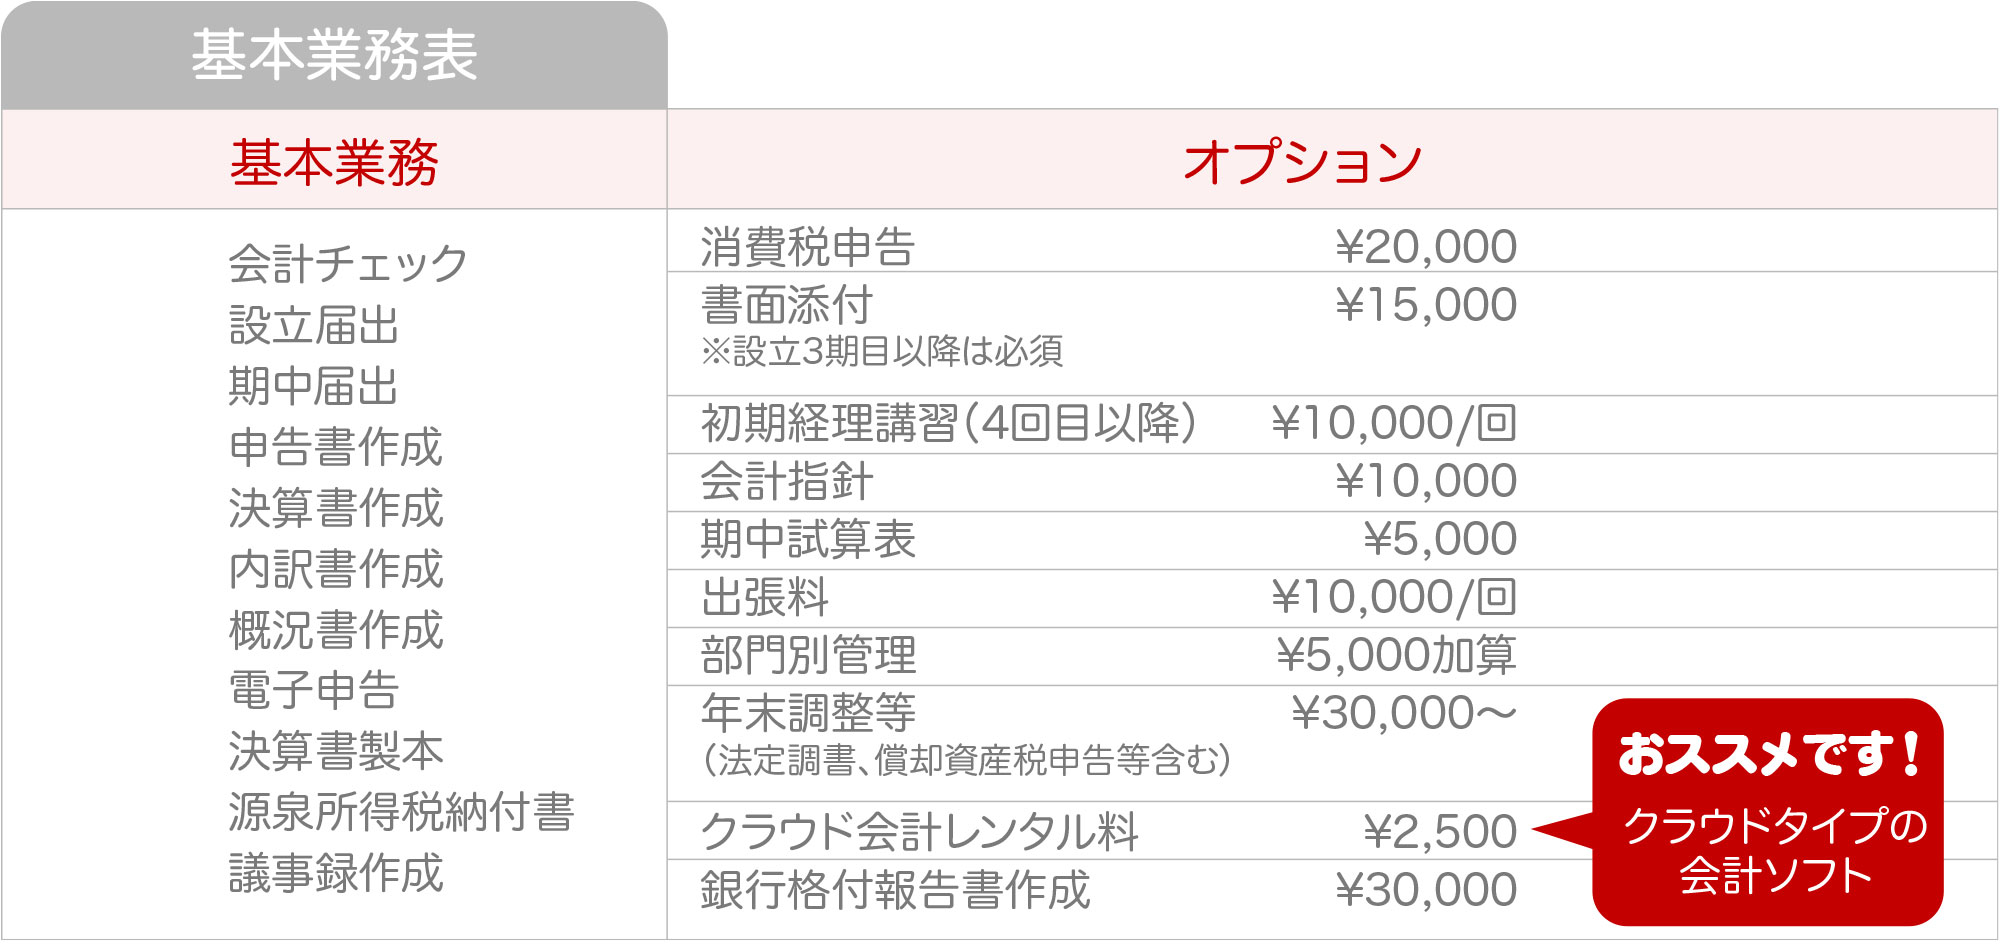 浅野会計事務所の金額・料金案内Bプラン基本業務表